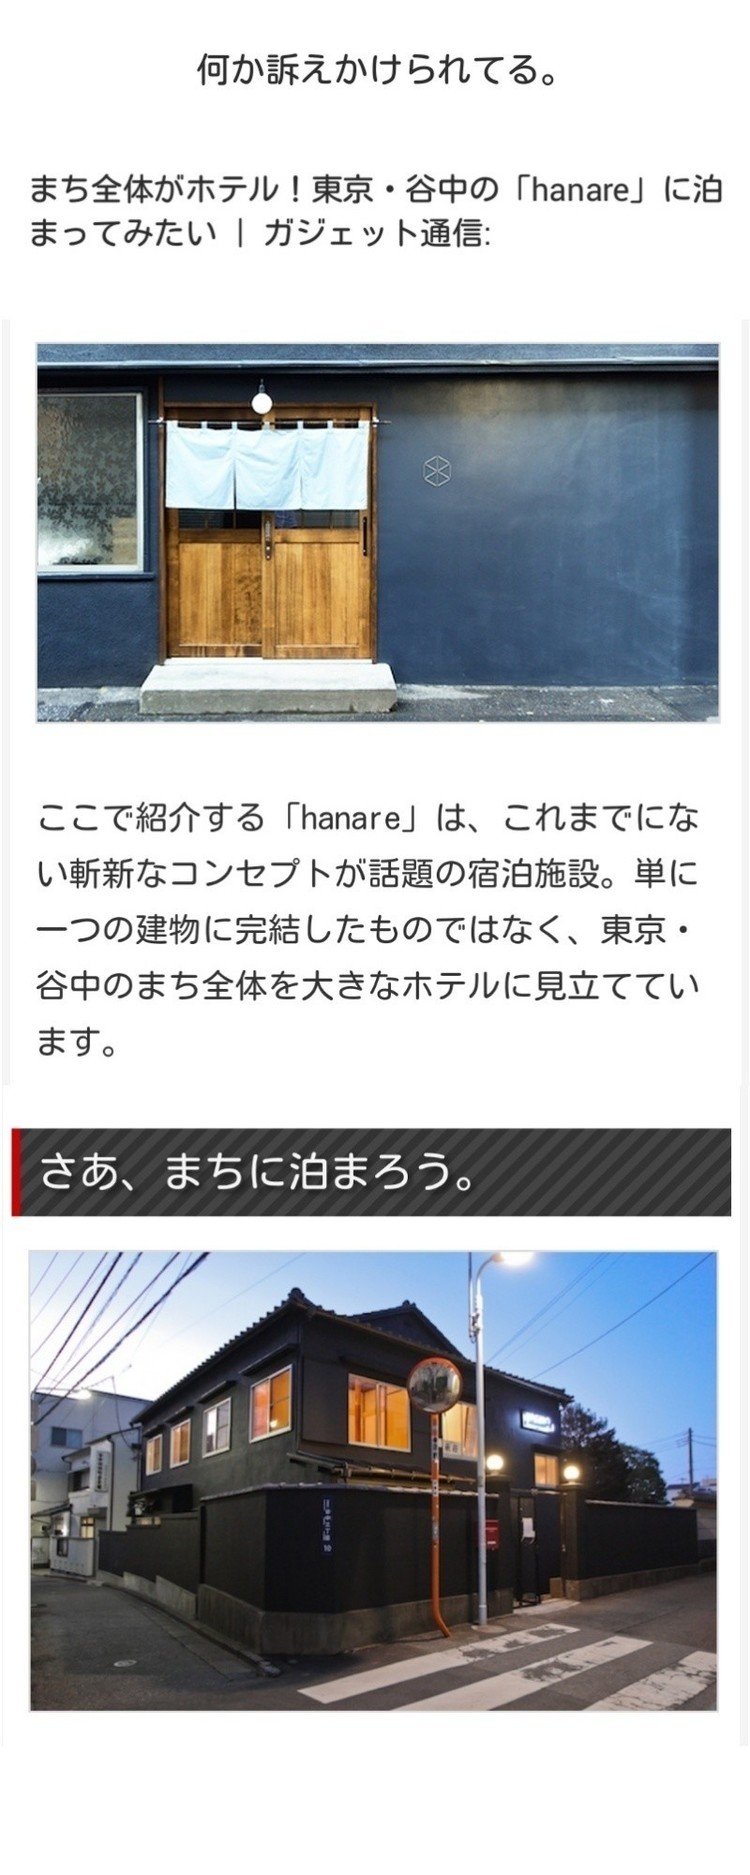 まち全体がホテル！東京・谷中の「hanare」に泊まってみたい ｜ ガジェット通信: http://getnews.jp/archives/1433799